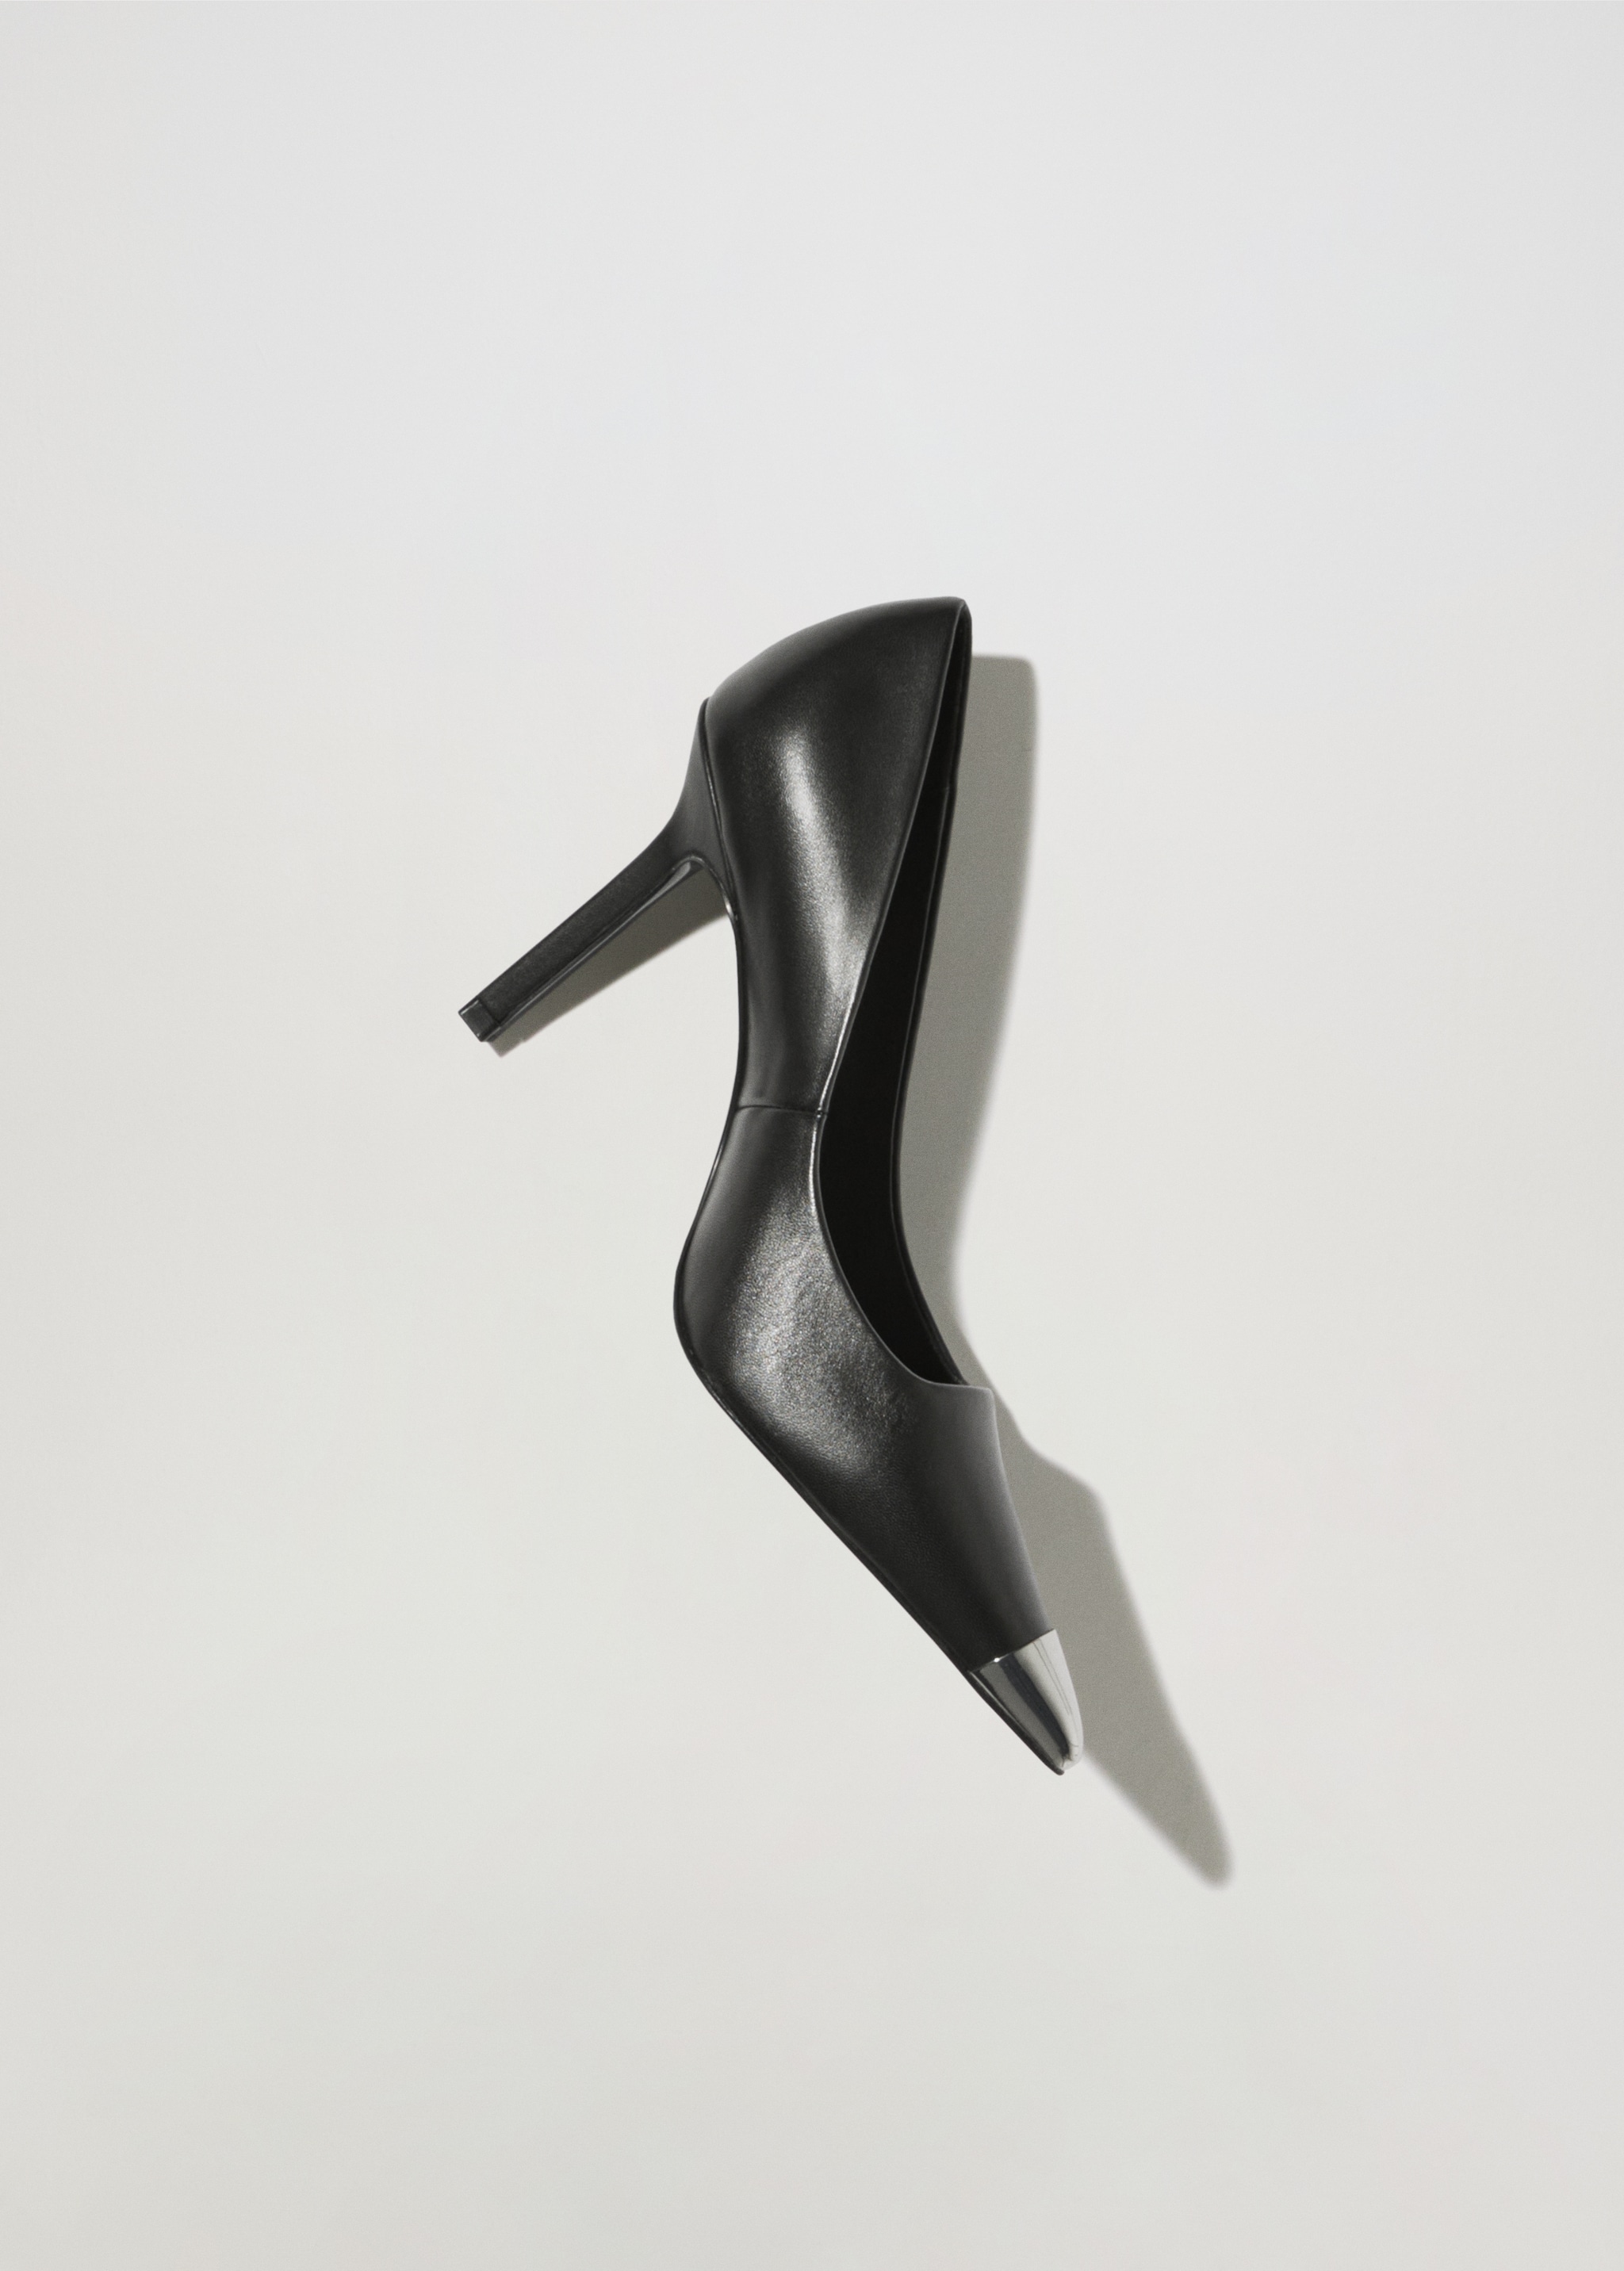 Zapato piel punta metalizada - Artículo sin modelo